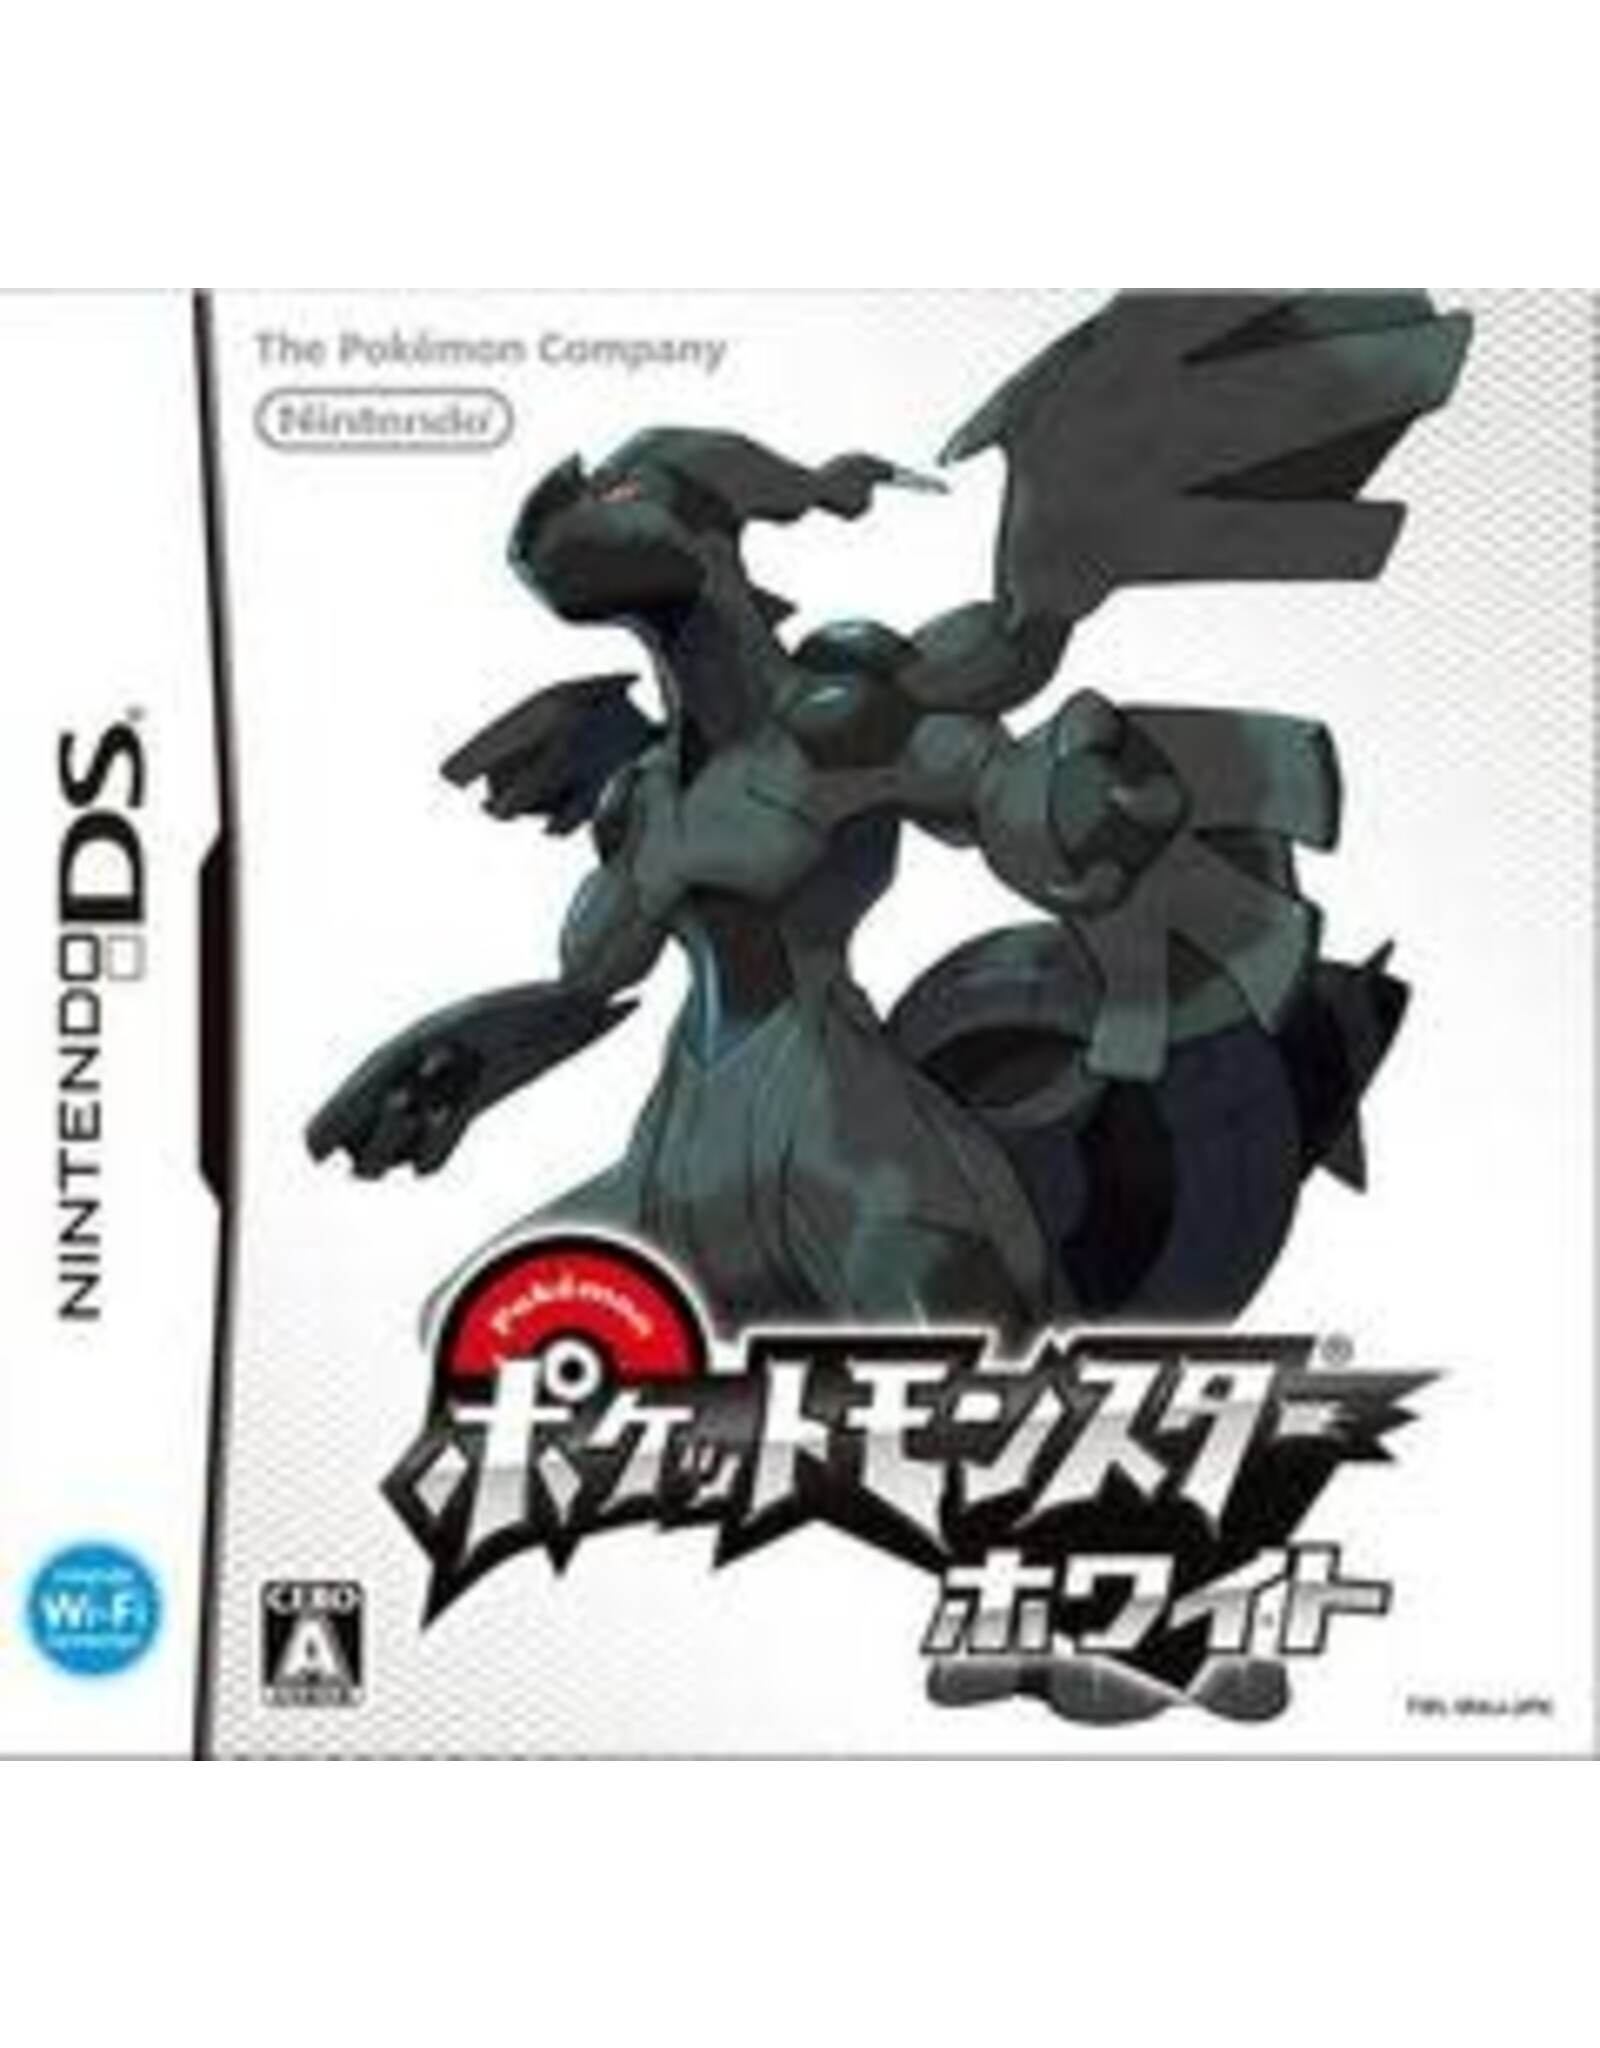 Nintendo DS Pokemon White - JP Import (Used)